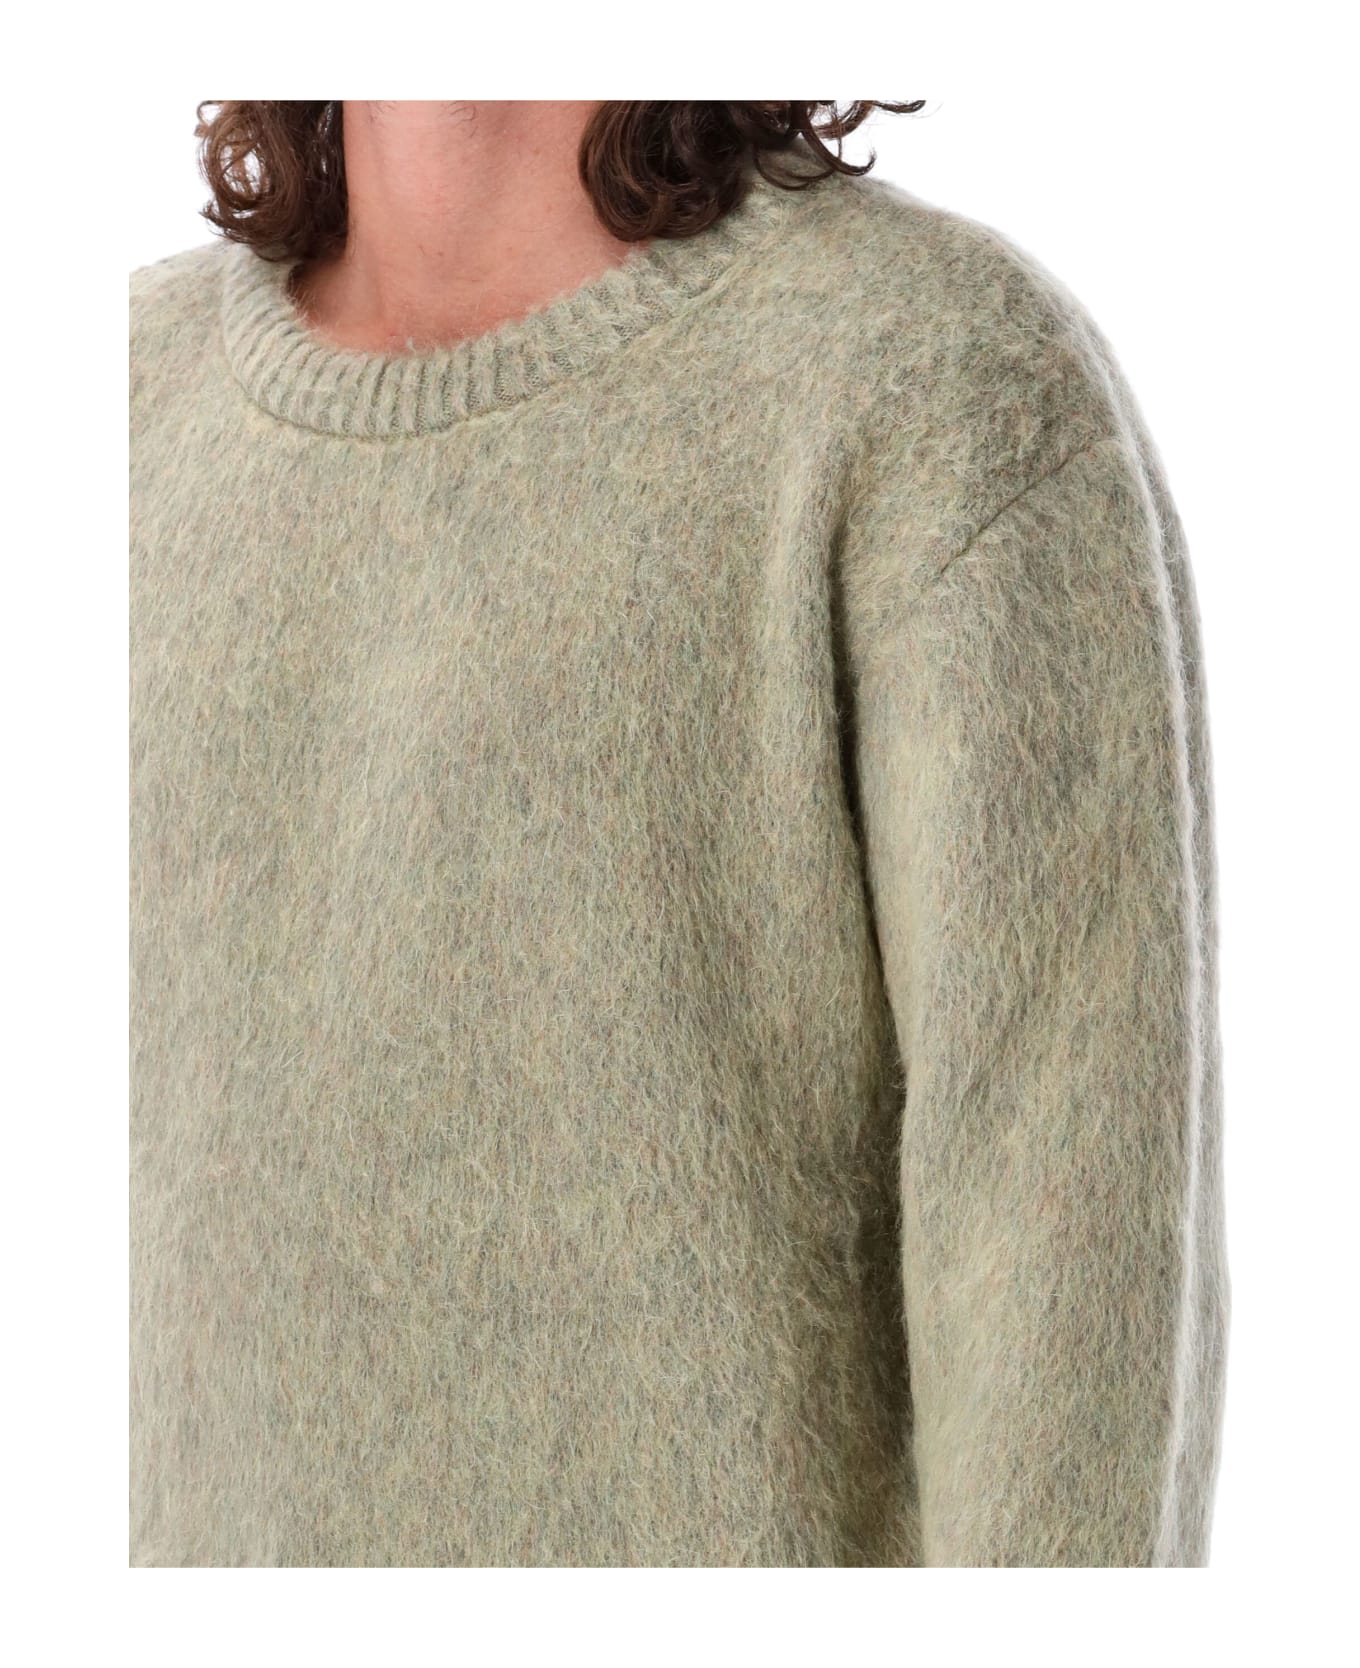 Lemaire Brushed Sweater - GREY ニットウェア